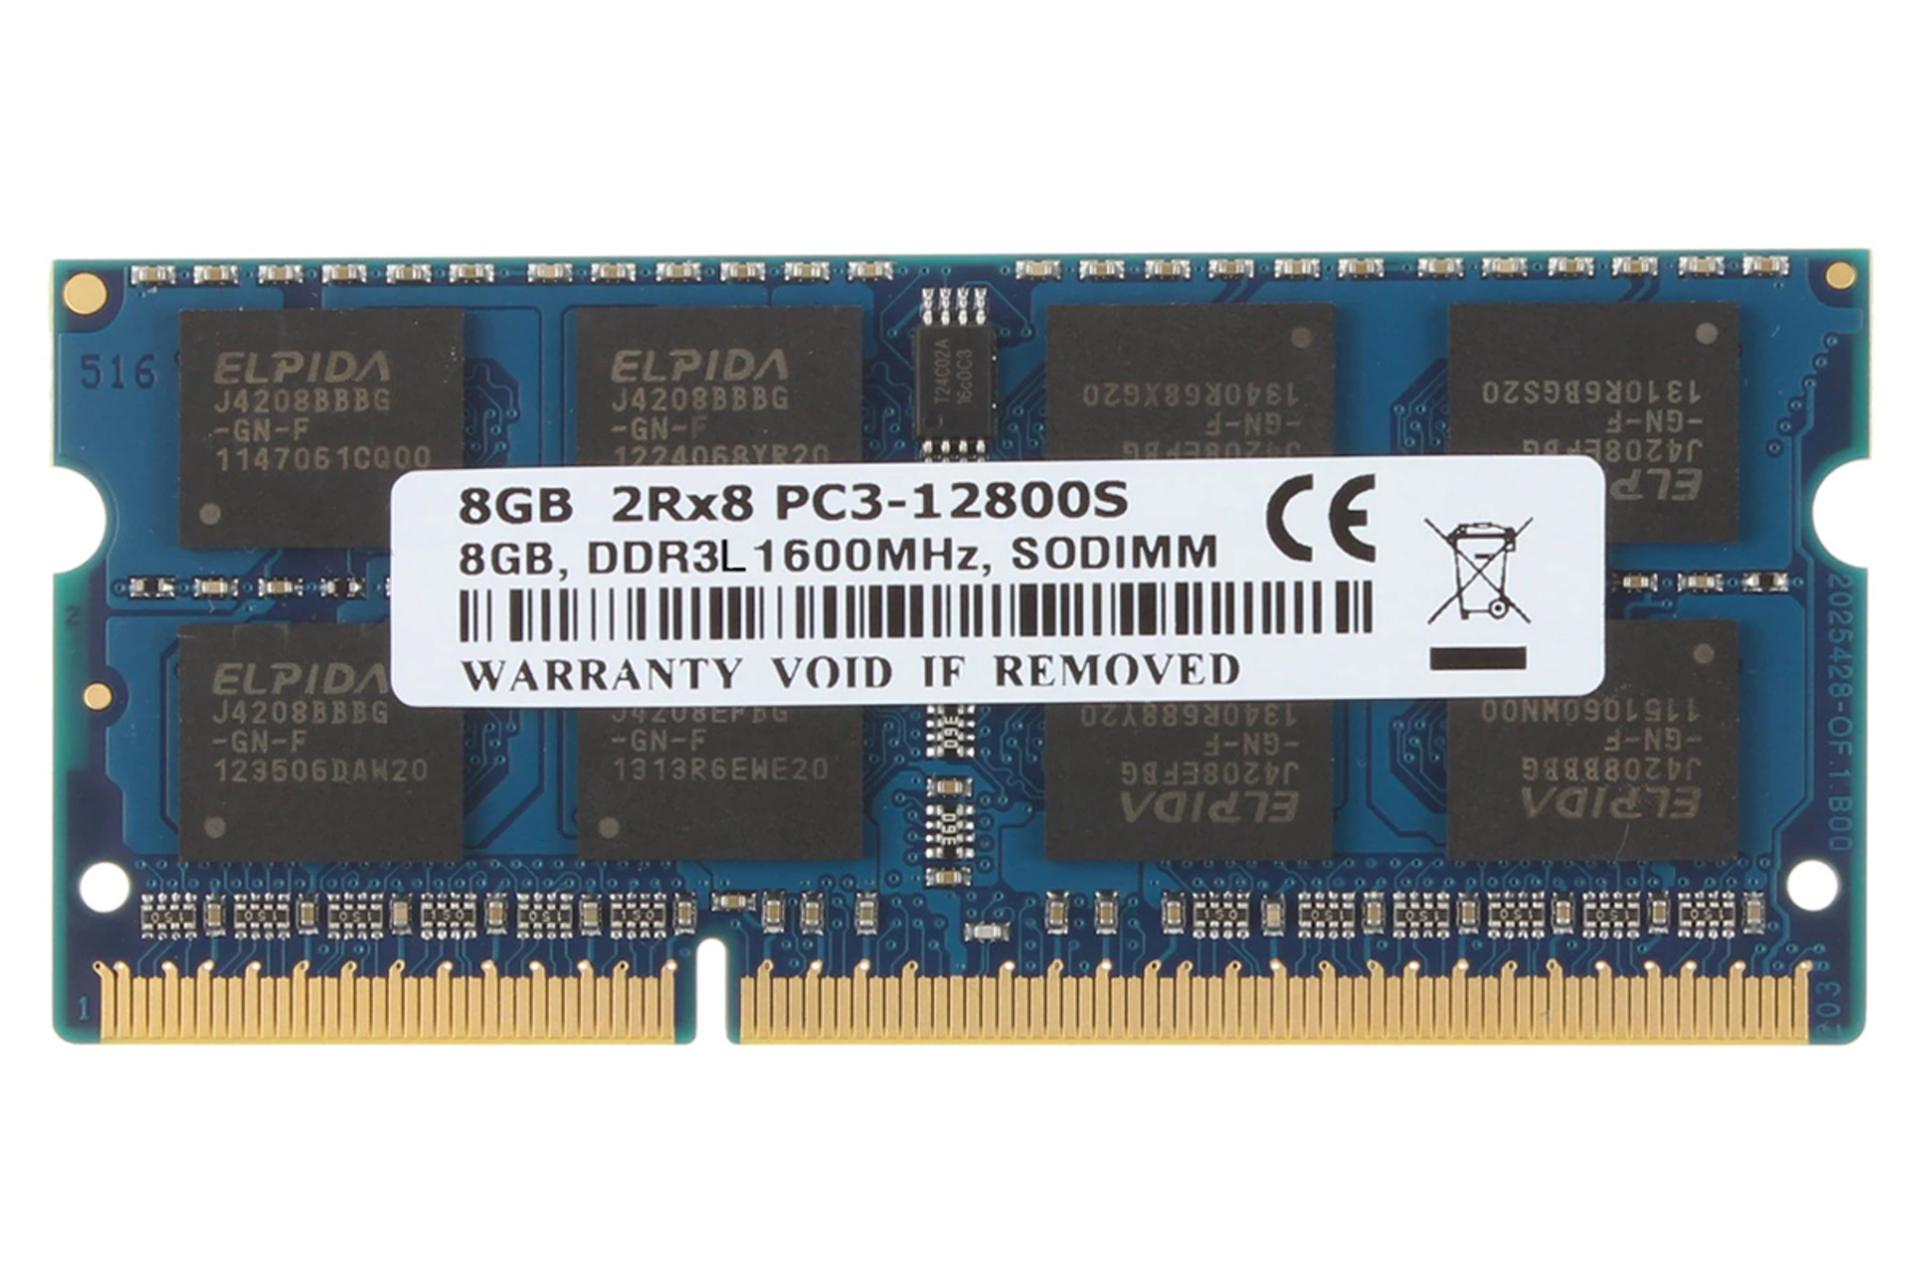 رم الپیدا EBJ81UG8EFU5-GNL-F ظرفیت 8 گیگابایت از نوع DDR3L-1600